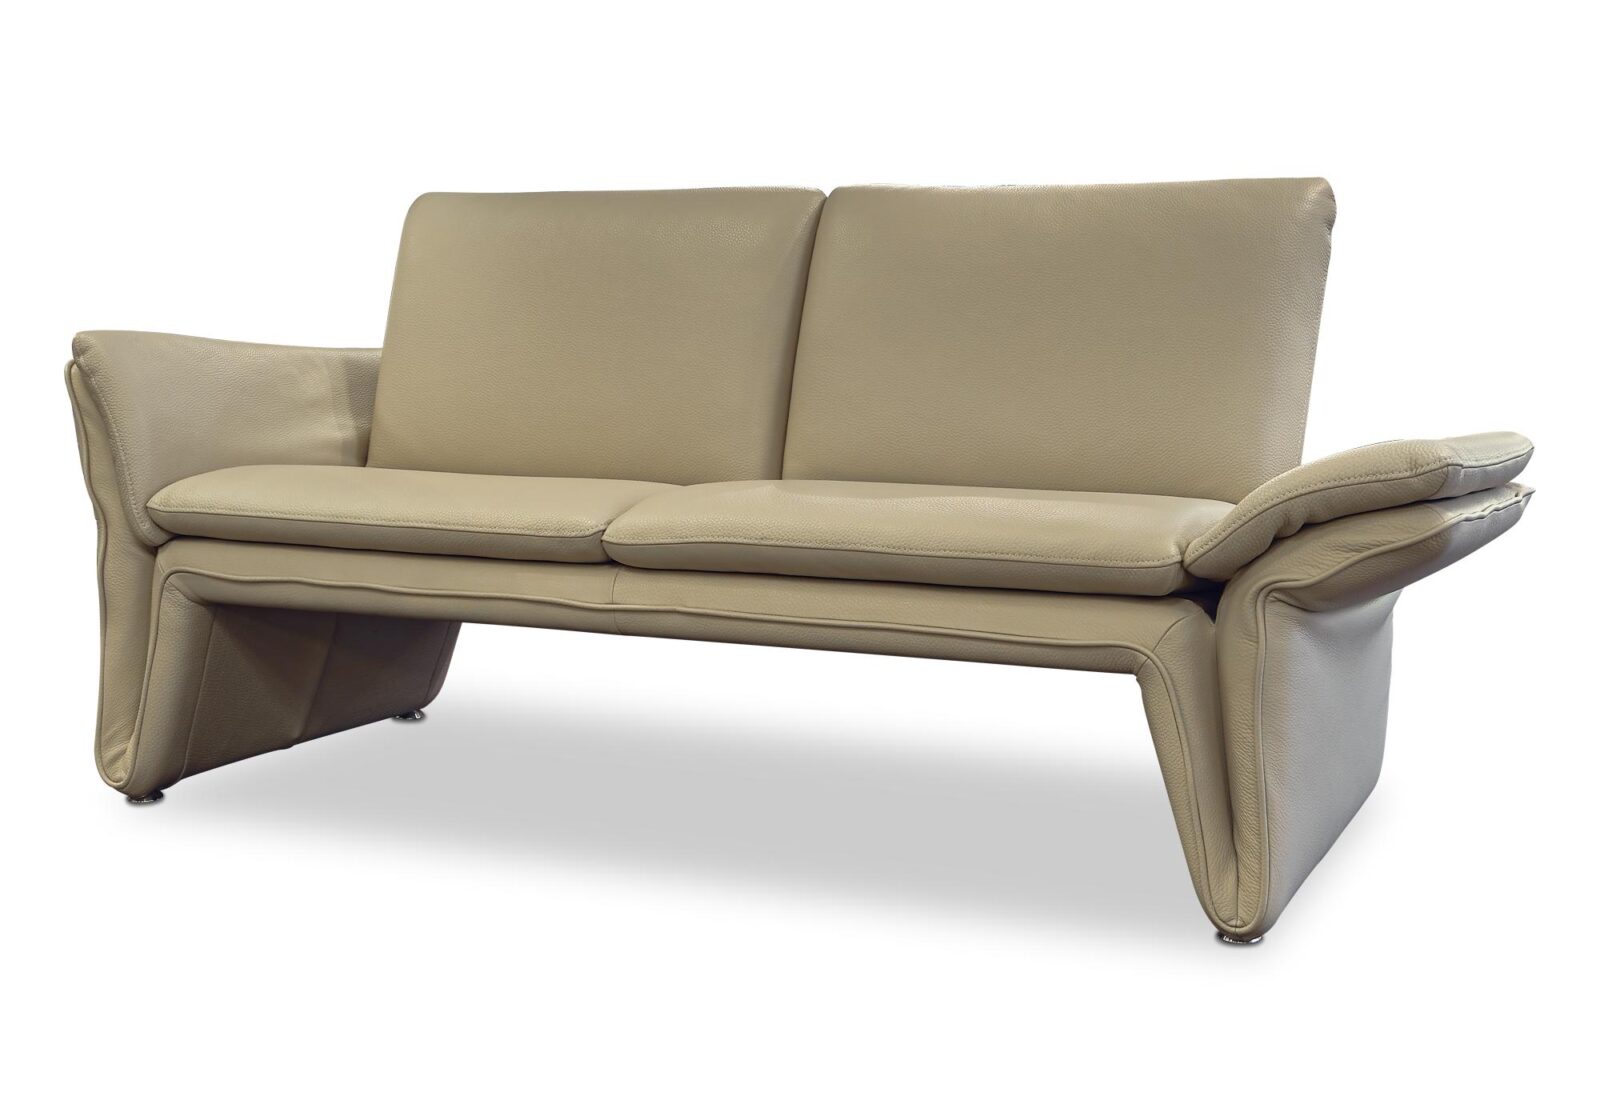 2.5er Sofa Loto  Leder oder Stoff. Bezug: Leder. Farbe: Beige. Erhältlich bei Möbel Gallati.